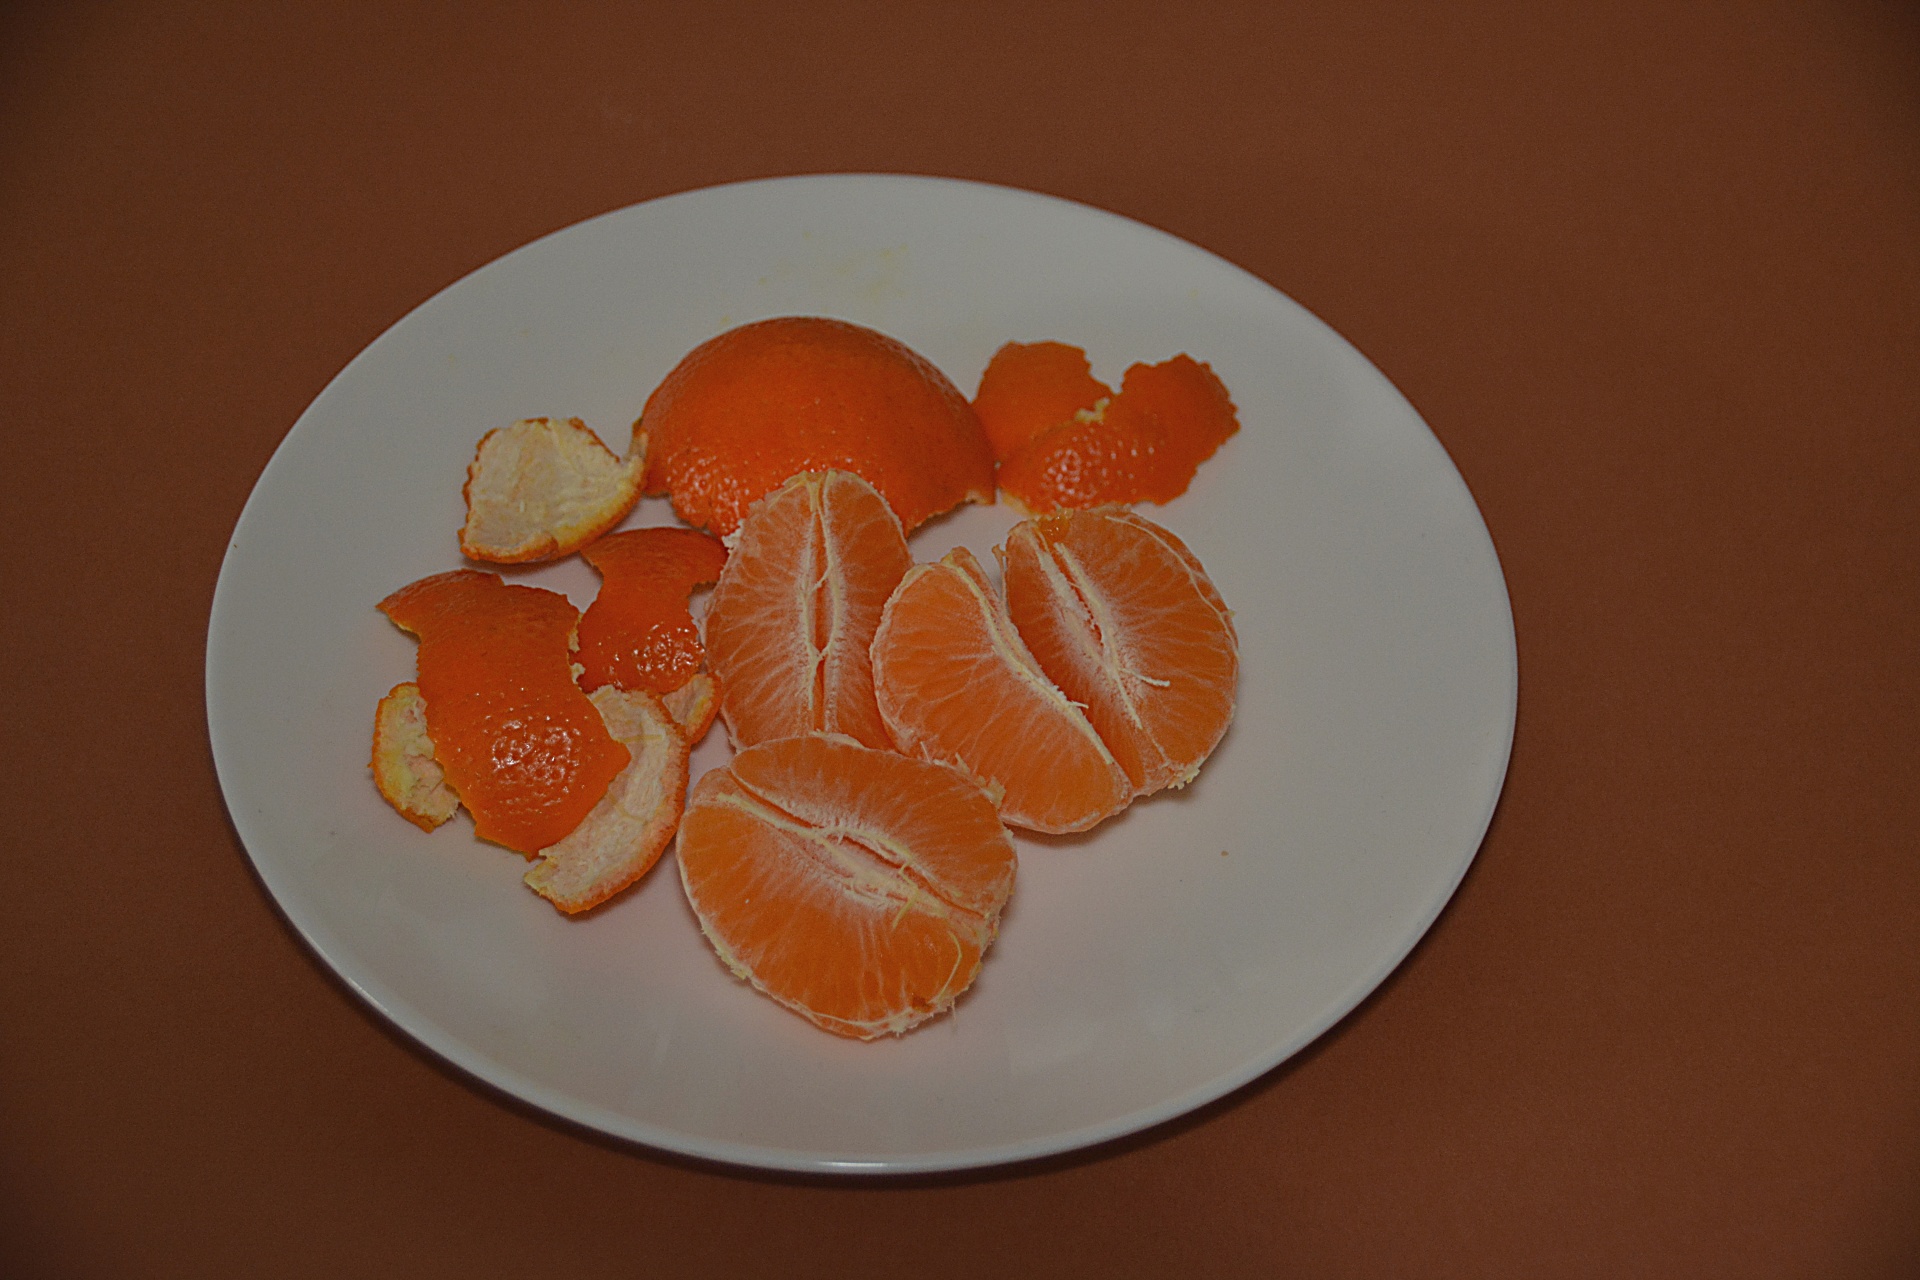 A tangerina